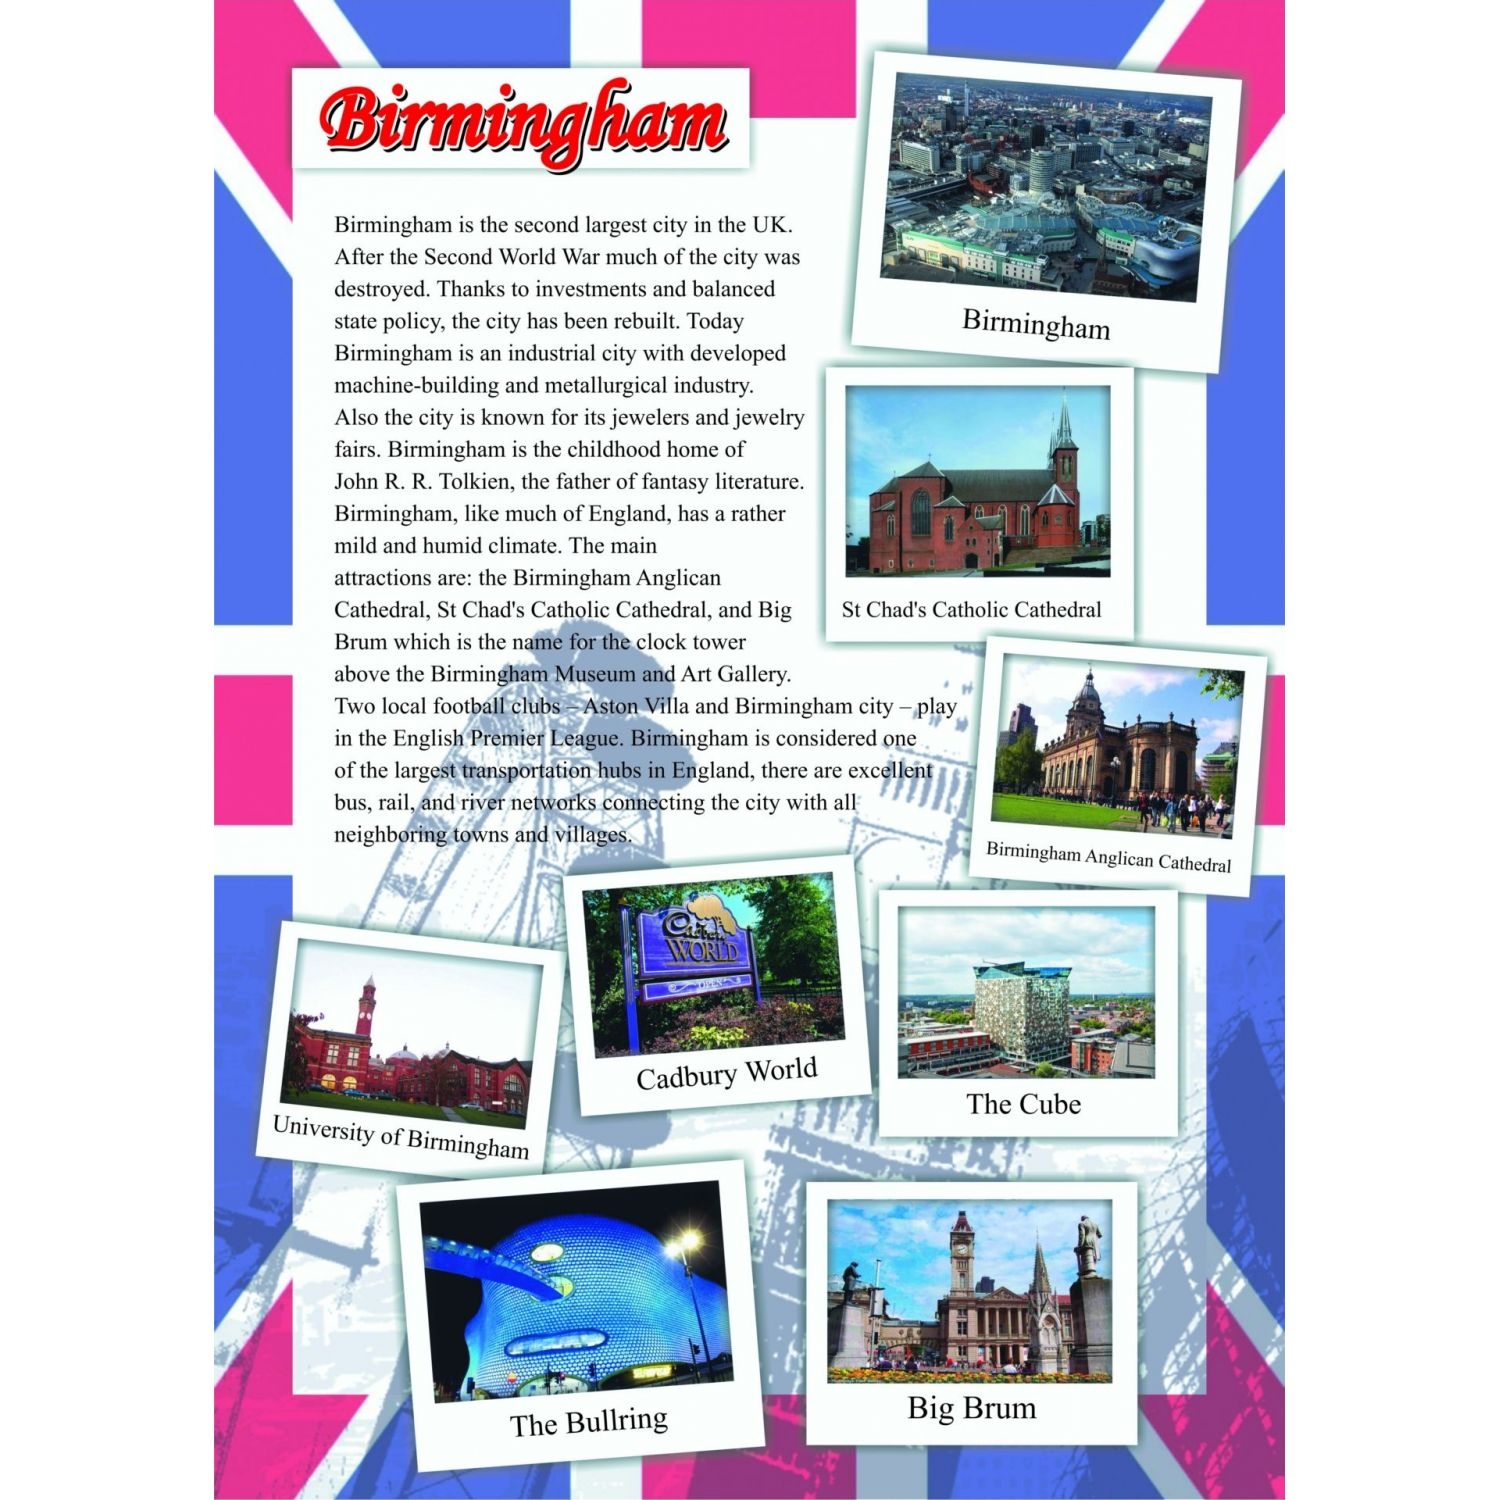 Комплект плакатов "Культурно-промышленные центры Великобритании и Северной Ирландии": 8…